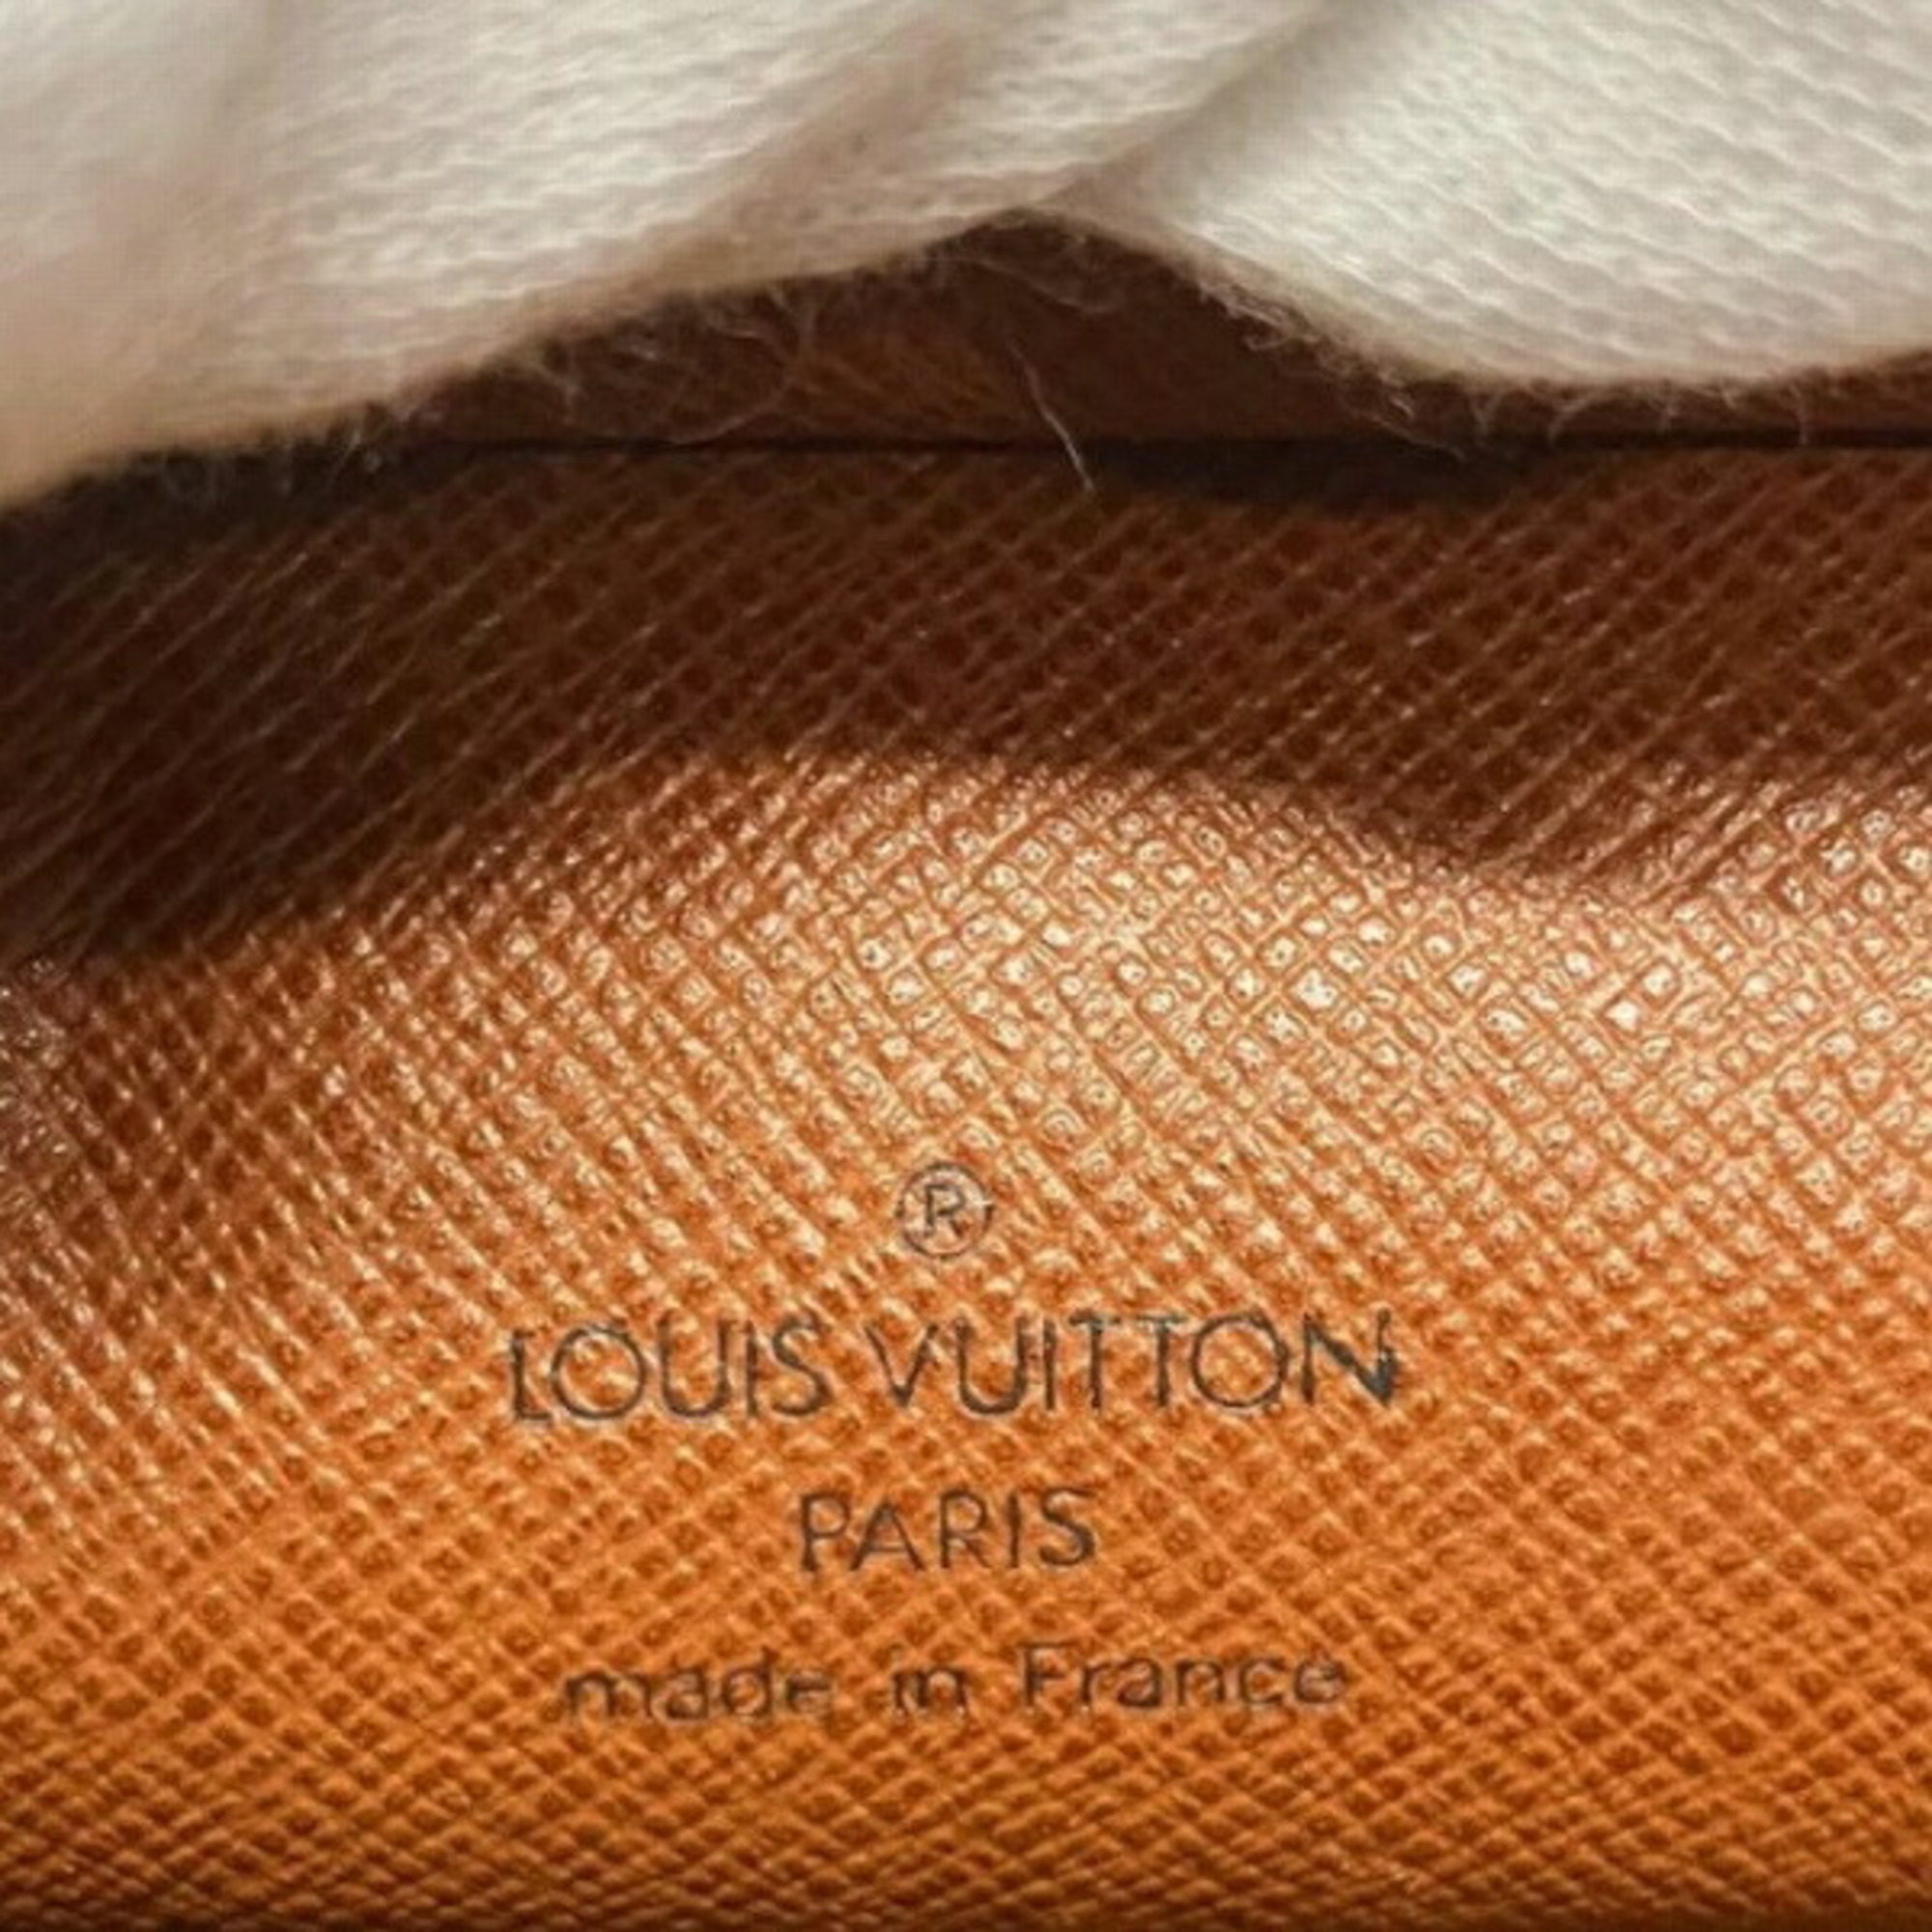 Louis Vuitton Monogram Pochette Homme M51795 Bag Clutch Men's Women's